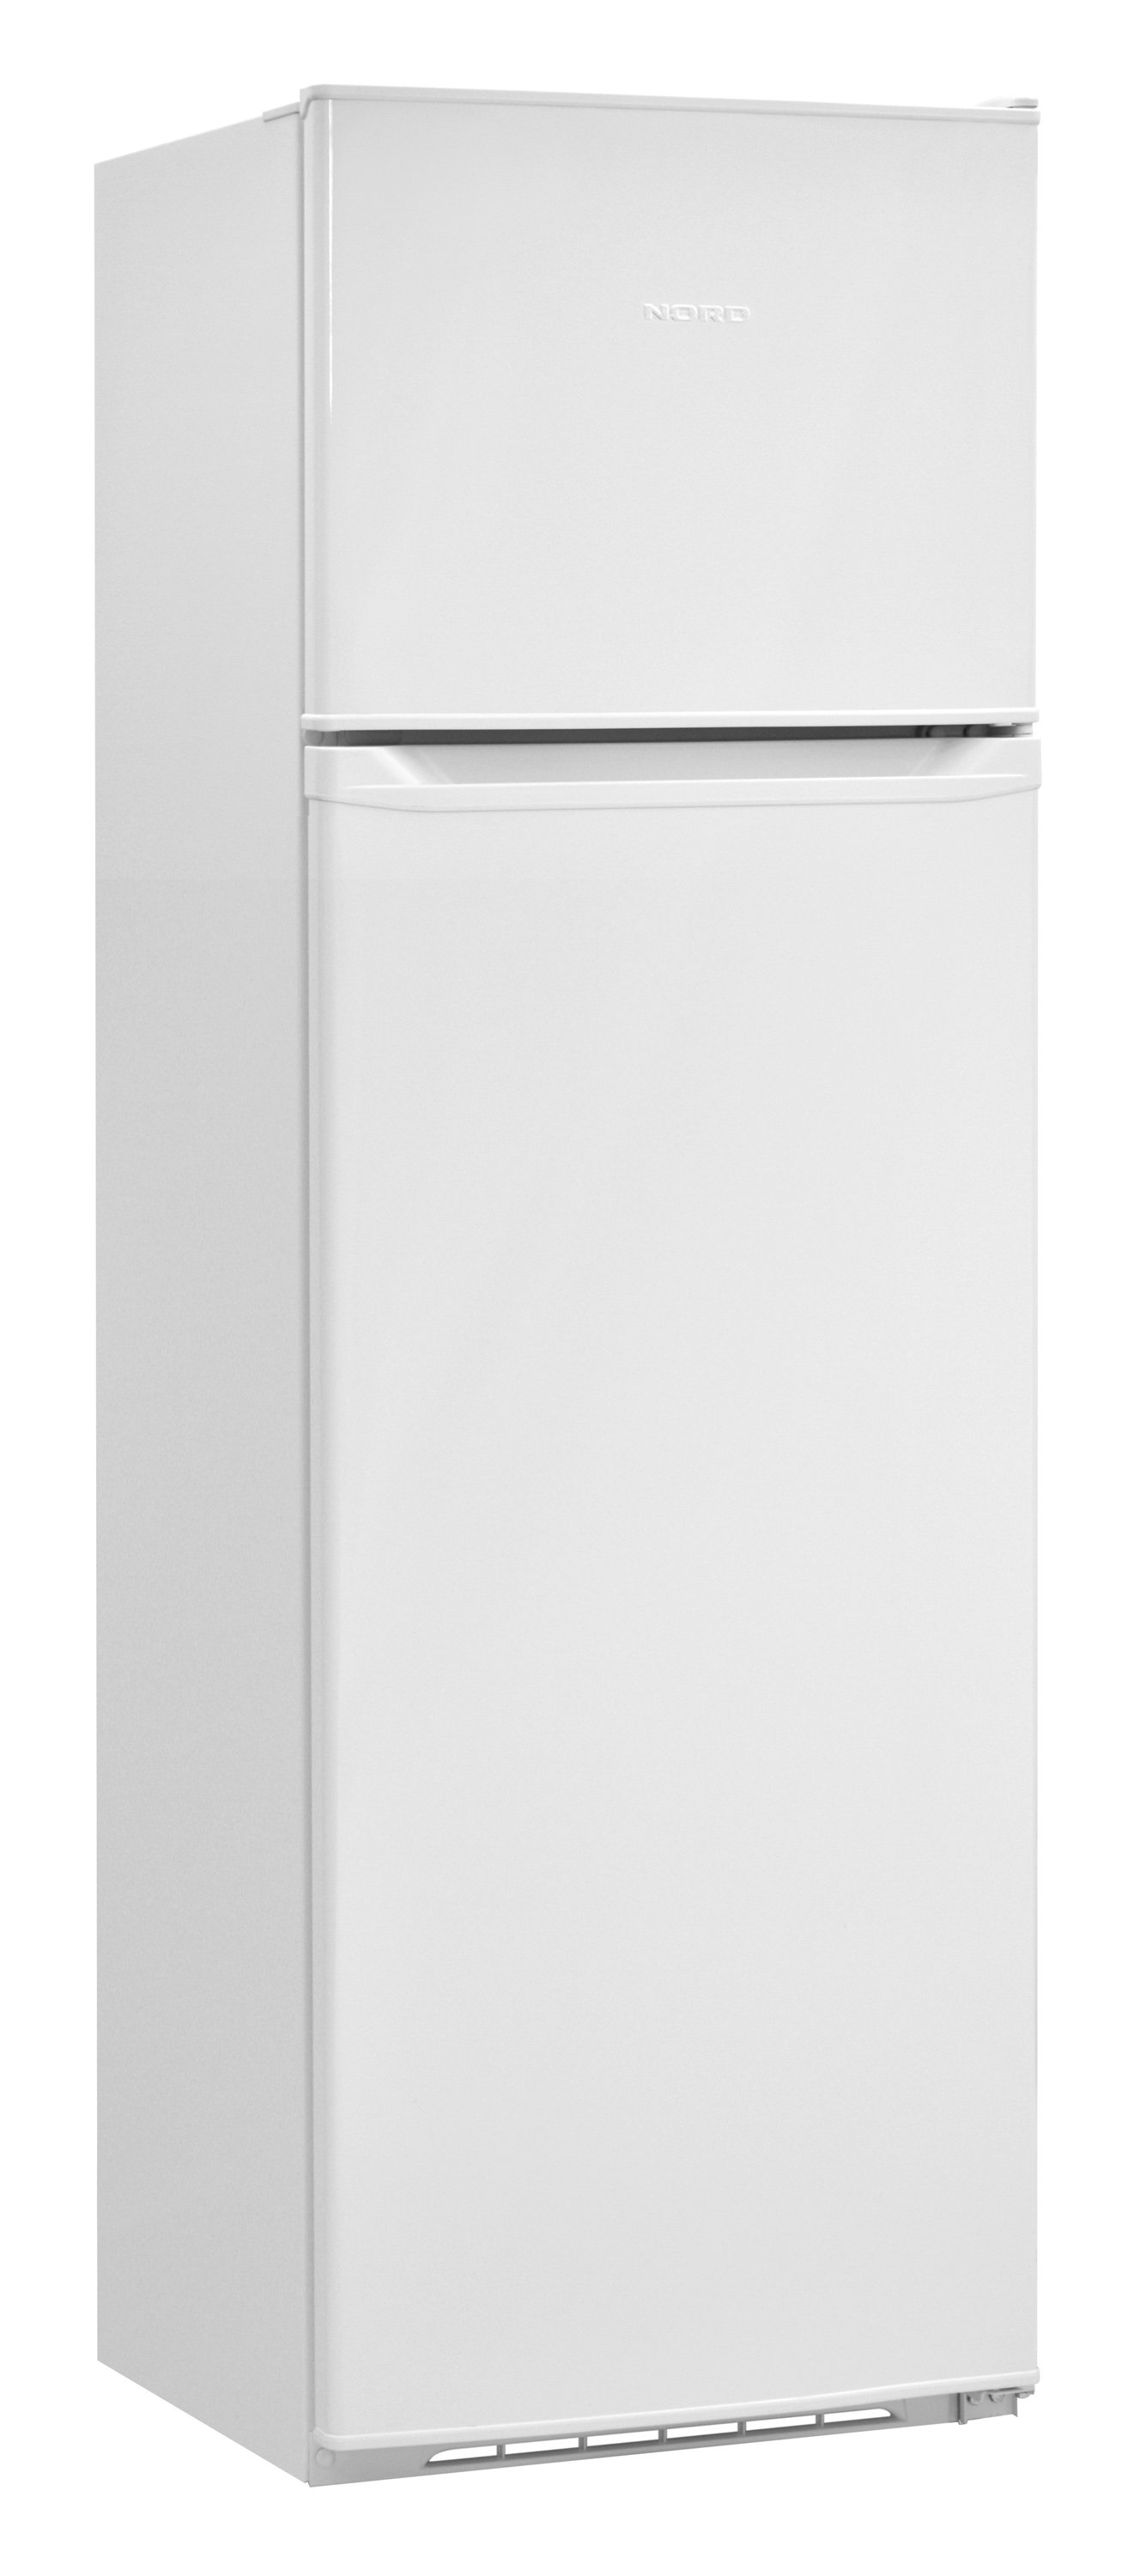 Купить Двухкамерный холодильник NORDFROST NRT 144 032 — Фото 1